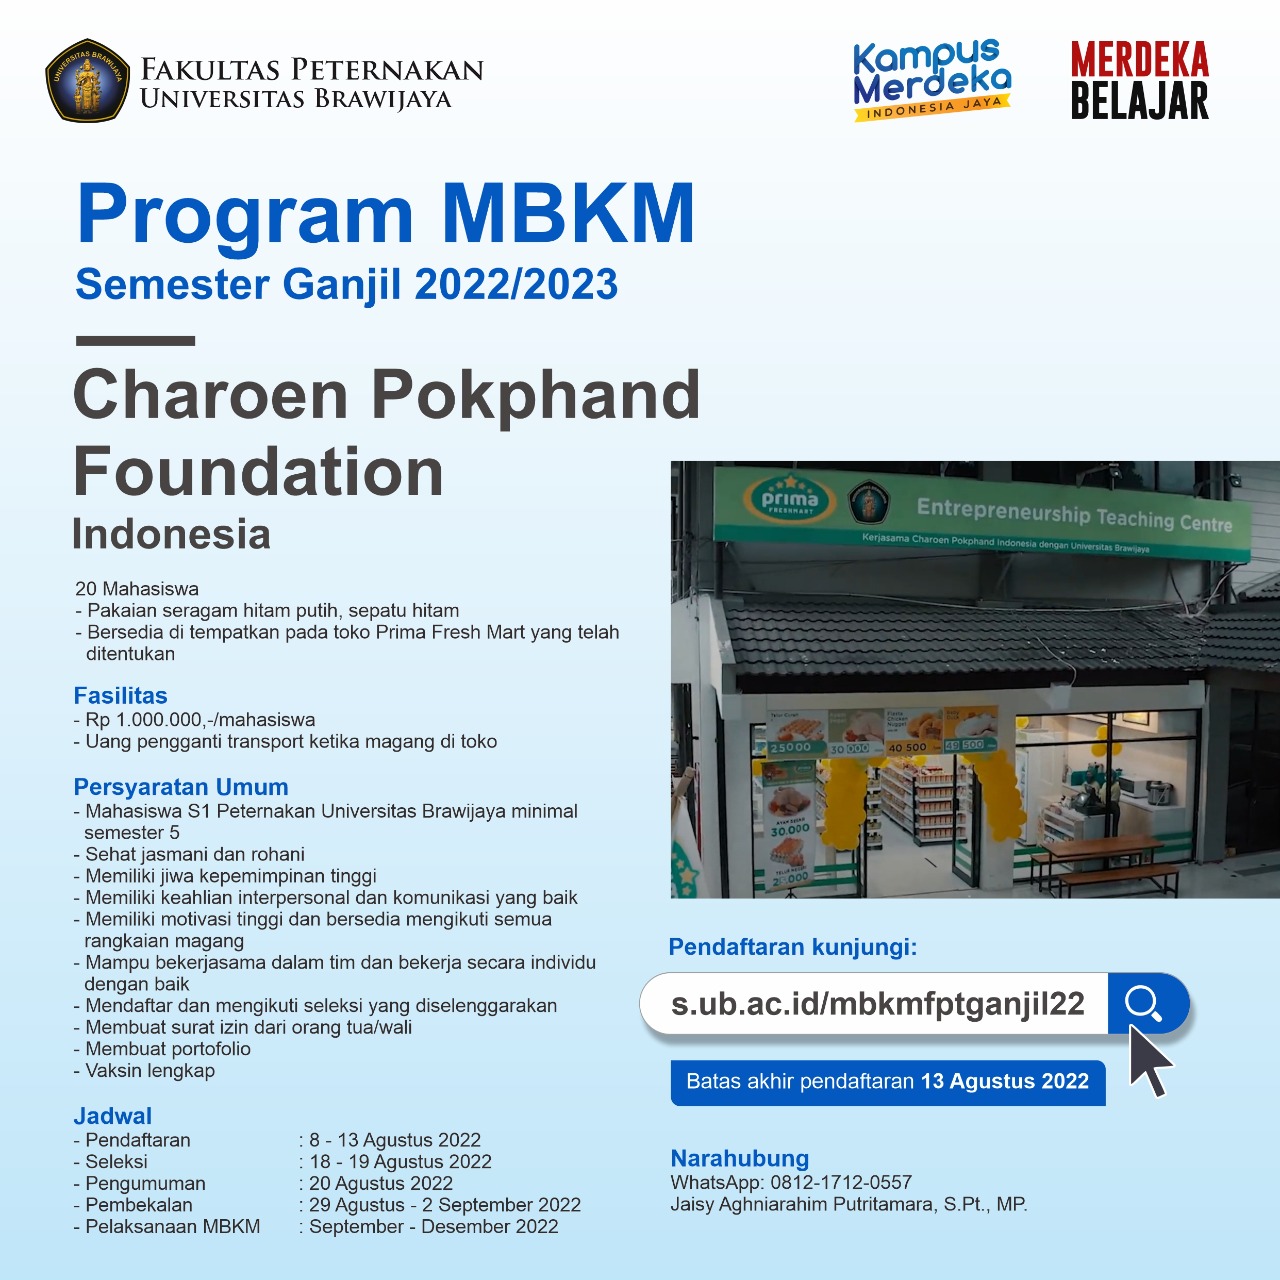 Charoen Pokphand Foundation MBKM Program Odd Semester 2022/2023